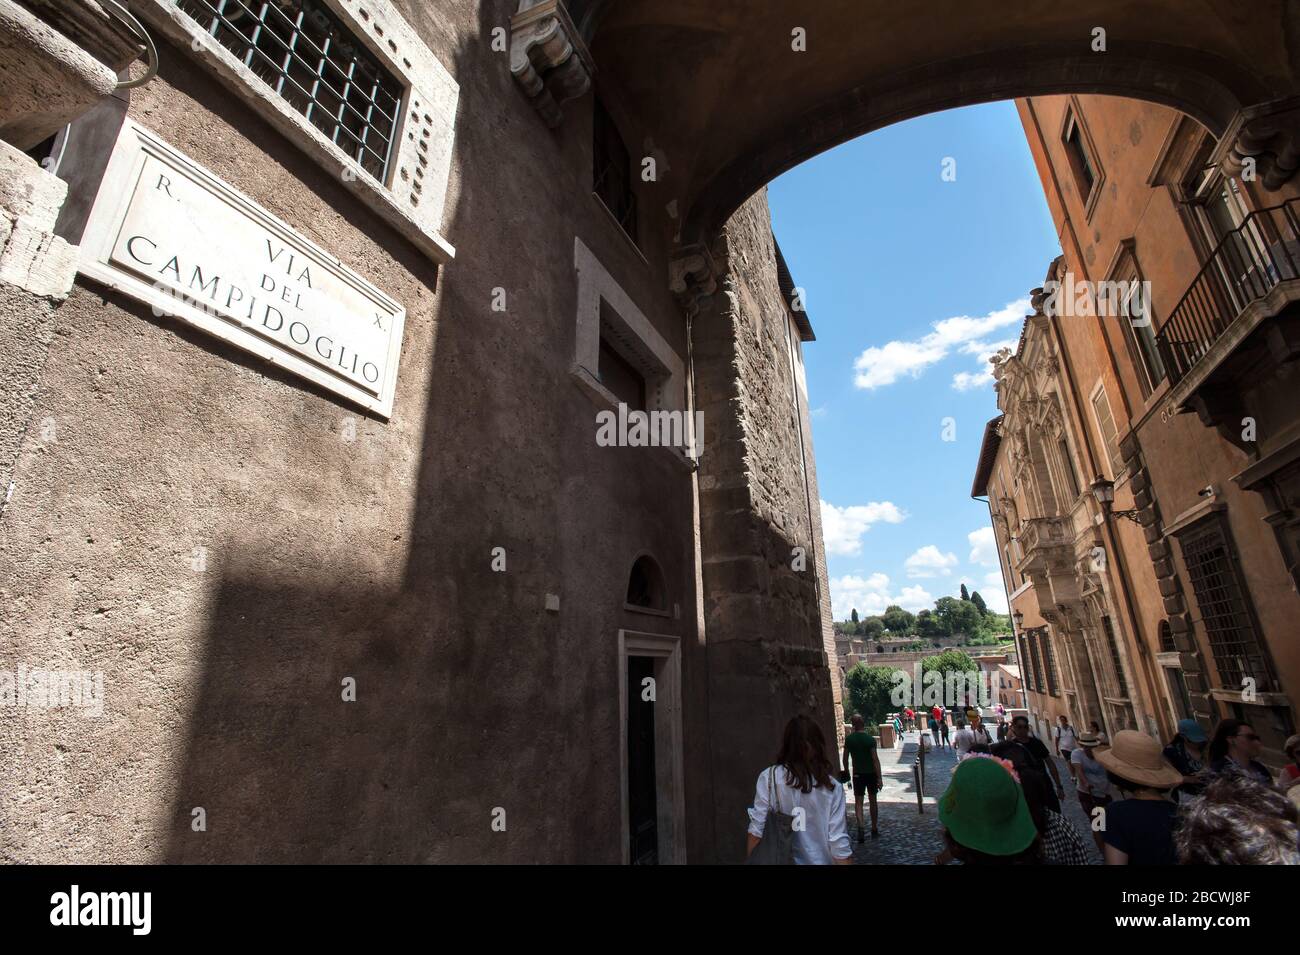 ROM, ITALIEN - 29. JUNI 2017 - Touristen gehen entlang der Via Del Campidoglio auf dem Kapitolinischen Hügel, Rom. Stockfoto